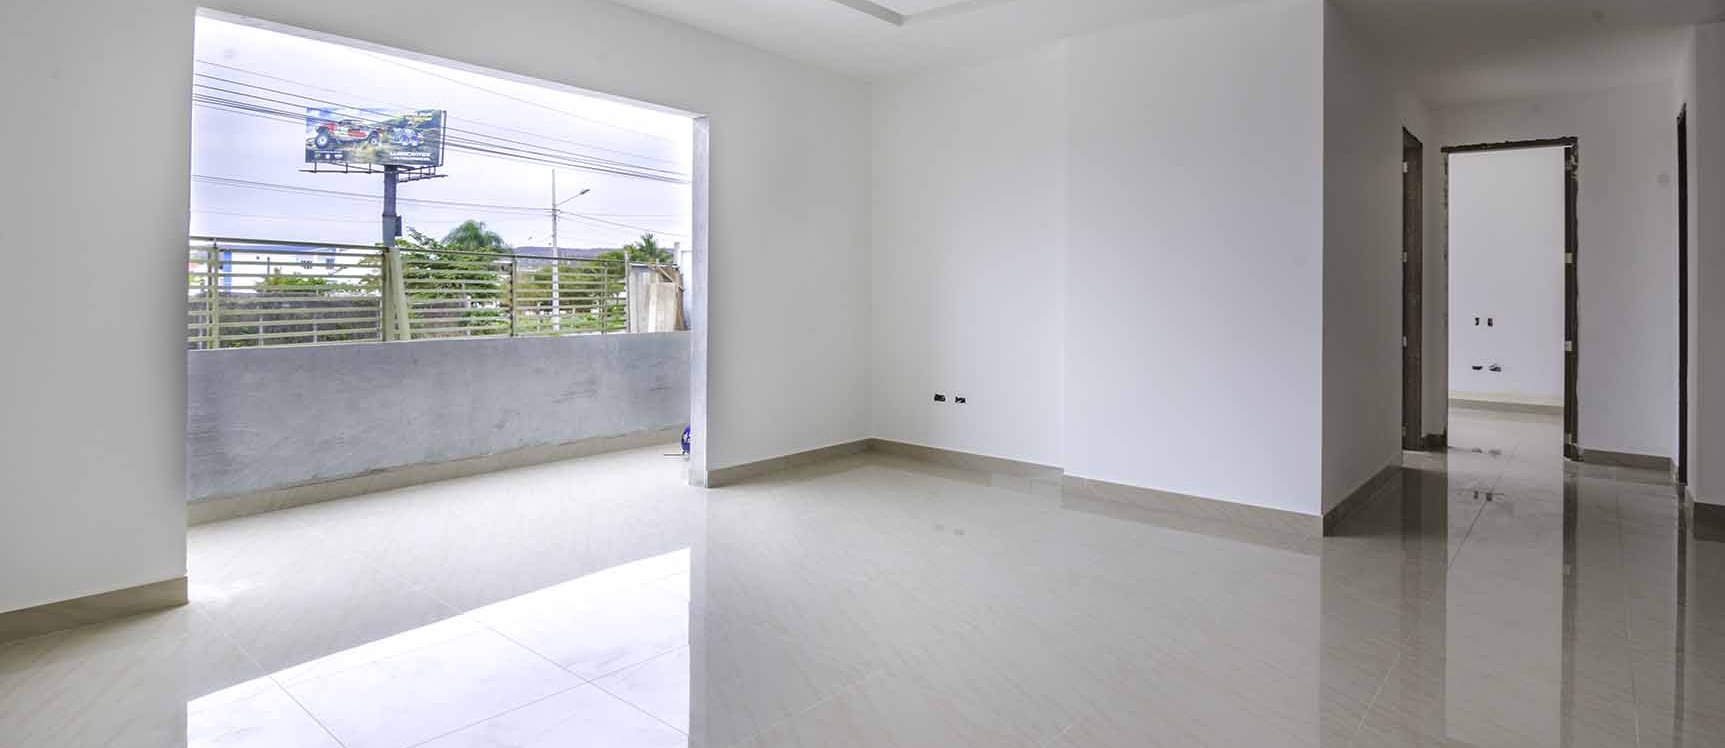 GeoBienes - Departamento en venta en Condominio Nigon en Capaes - Santa Elena - Plusvalia Guayaquil Casas de venta y alquiler Inmobiliaria Ecuador